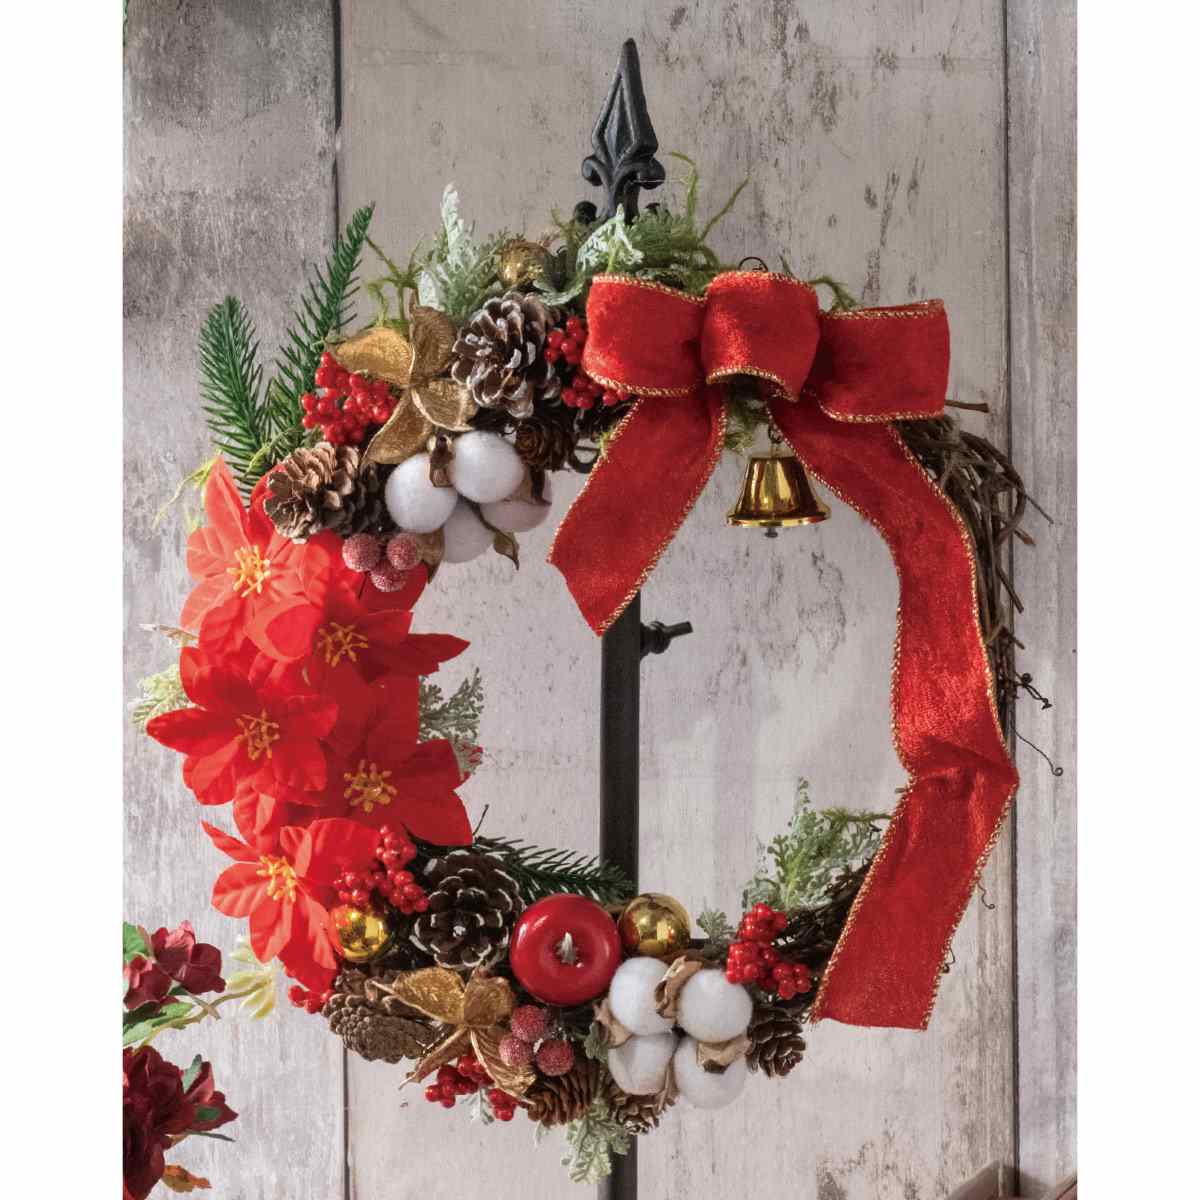 30cm ポインセチアリース クリスマス ディスプレイ 店舗装飾 吊るし飾り 壁面 通販 ストア エキスプレス